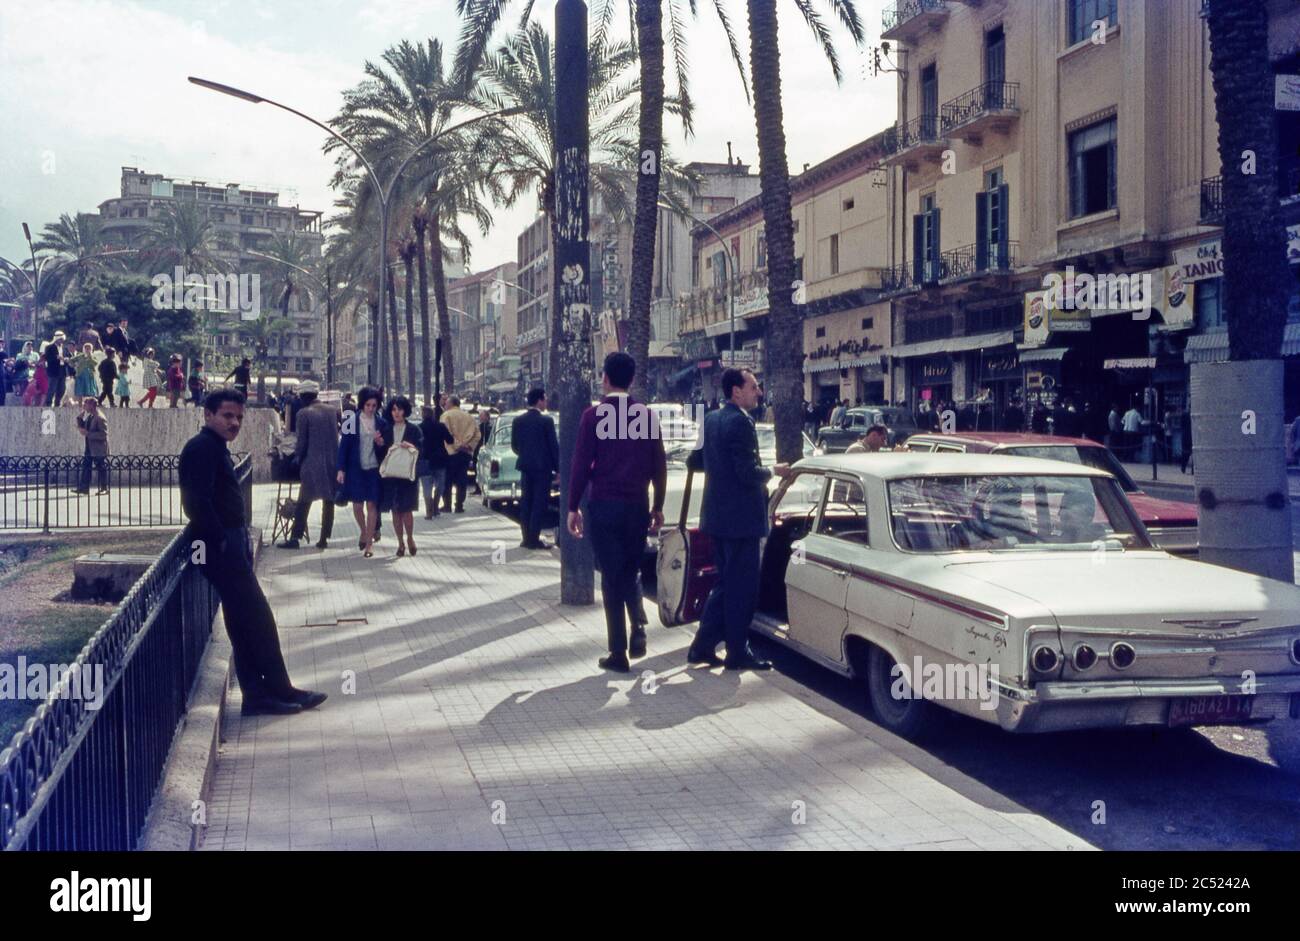 Eine Straßenszene in Beirut 1967. Beirut ist die Hauptstadt und größte Stadt im Libanon. Es ist die drittgrößte Stadt in der Levante Region und die fünfzehntgrößte in der arabischen Welt. Beirut liegt auf einer Halbinsel in der Mitte der libanesischen Mittelmeerküste und ist ein wichtiger regionaler Hafen. Es ist eine der ältesten Städte der Welt, seit mehr als 5,000 Jahren bewohnt. Stockfoto